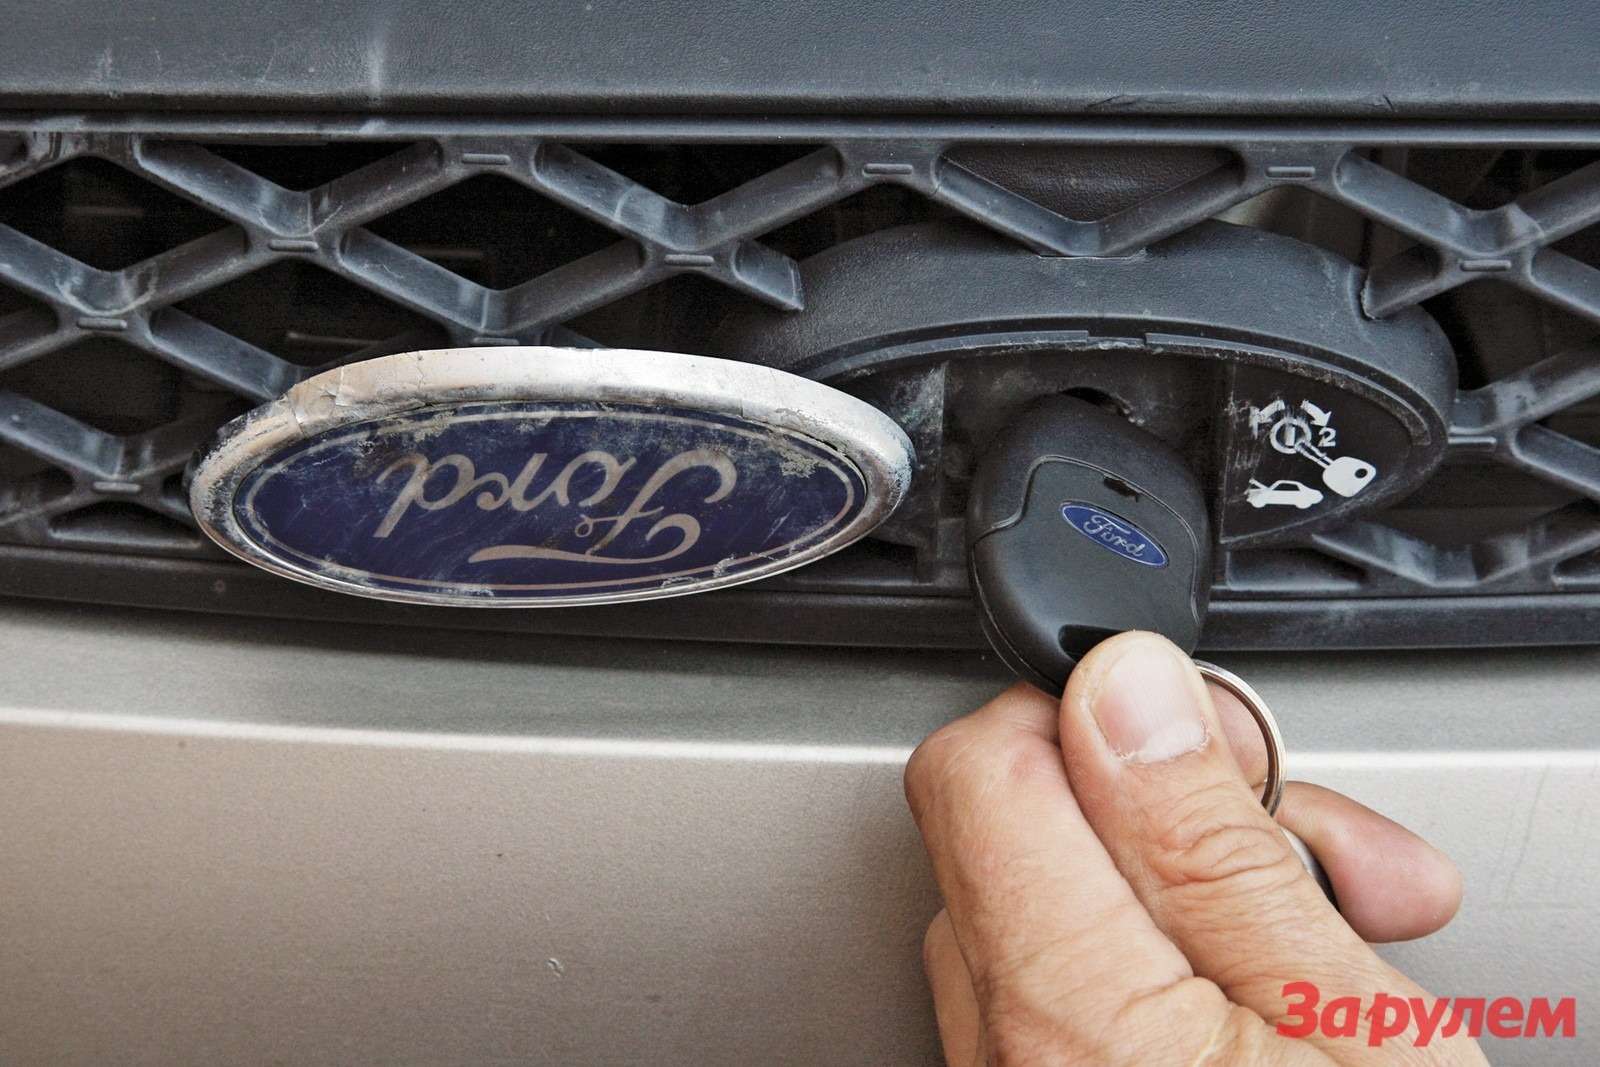 Форд фокус 2 открыть капот без ключа. Форд фокус 1 значок замка. Открыть капот Форд фокус 2. Не открывается капот Форд фокус 2. Механизм с логотипом открытие капота Ford Focus 2.